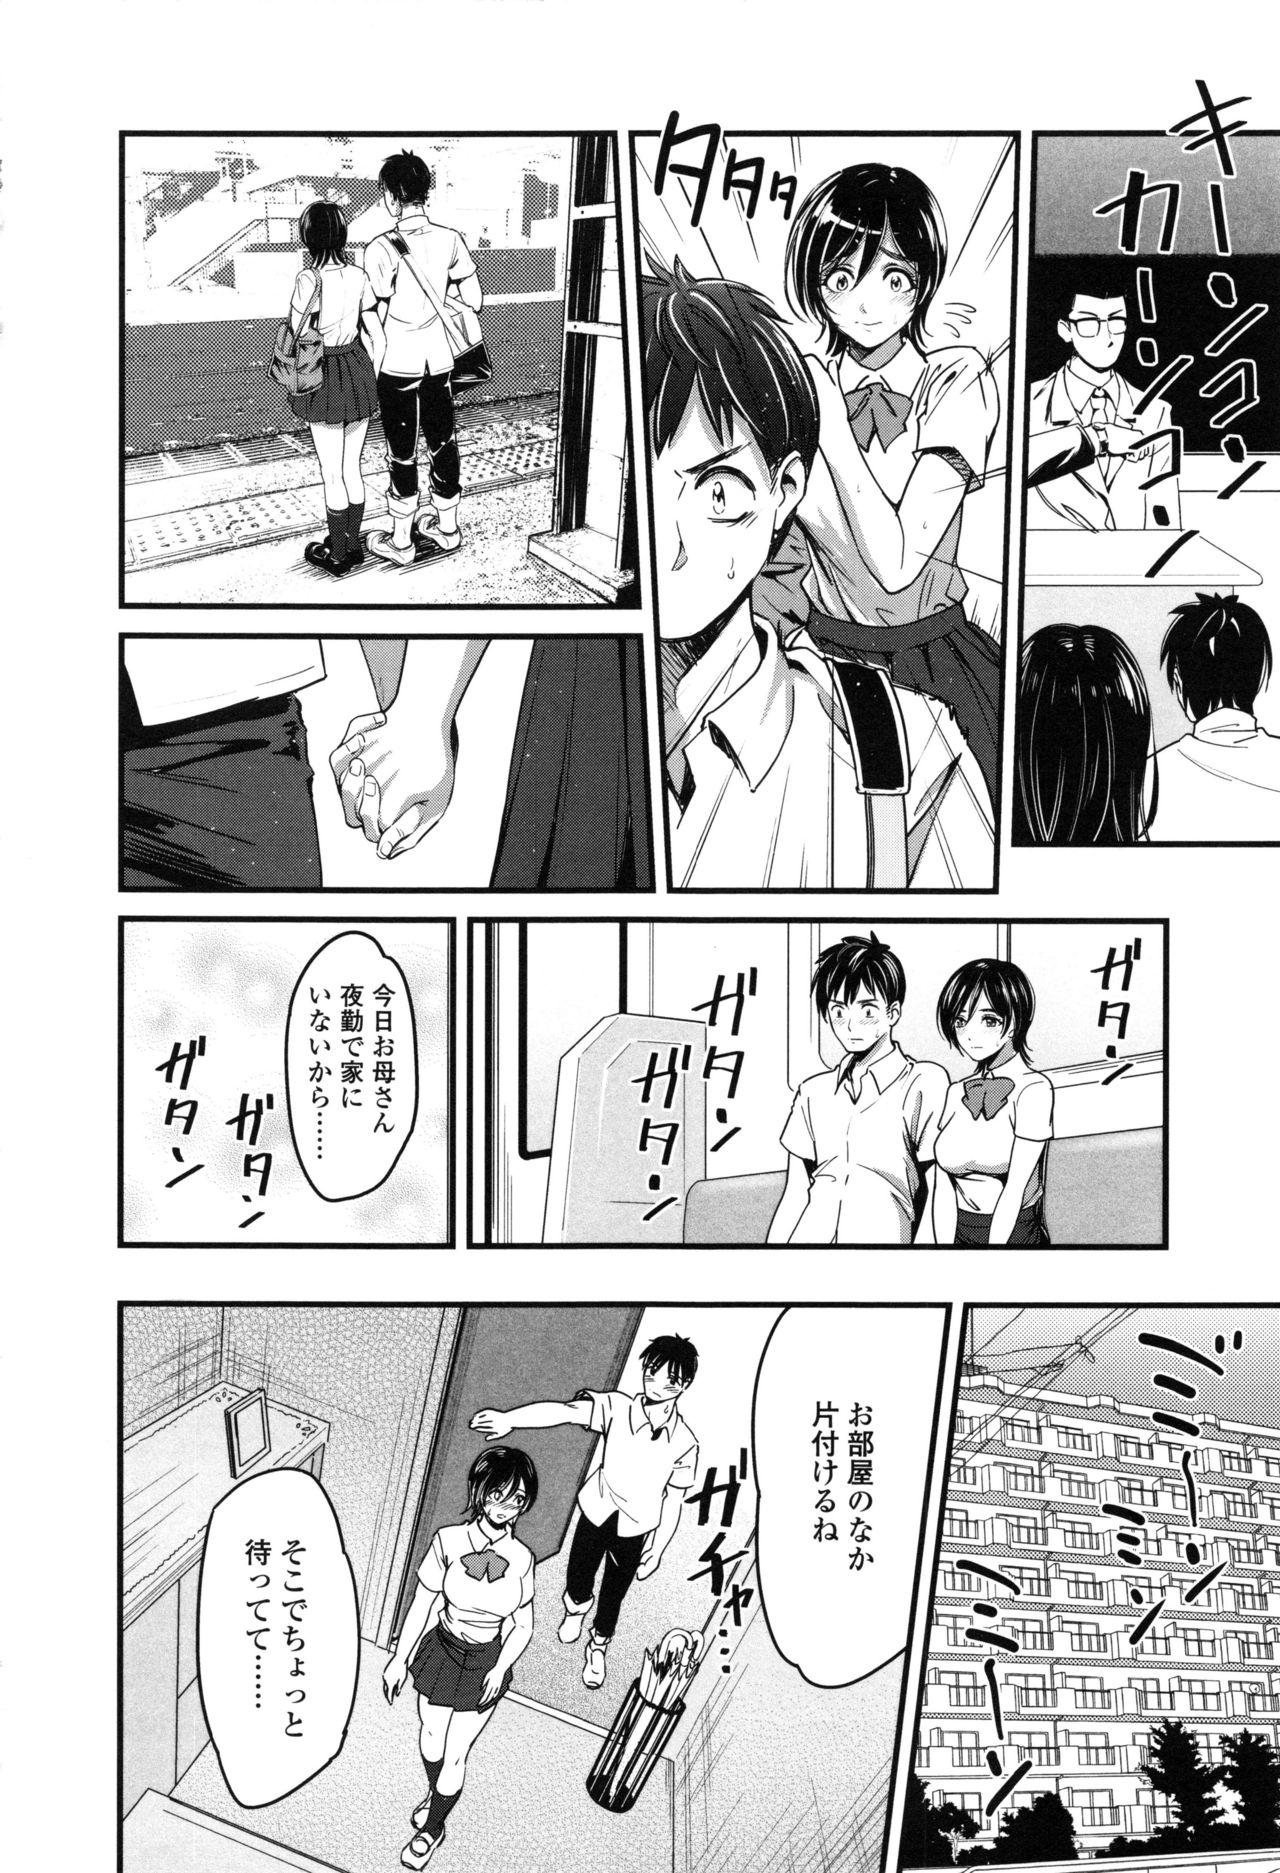 Seifuku no Mama Aishinasai! - Love in school uniform 13